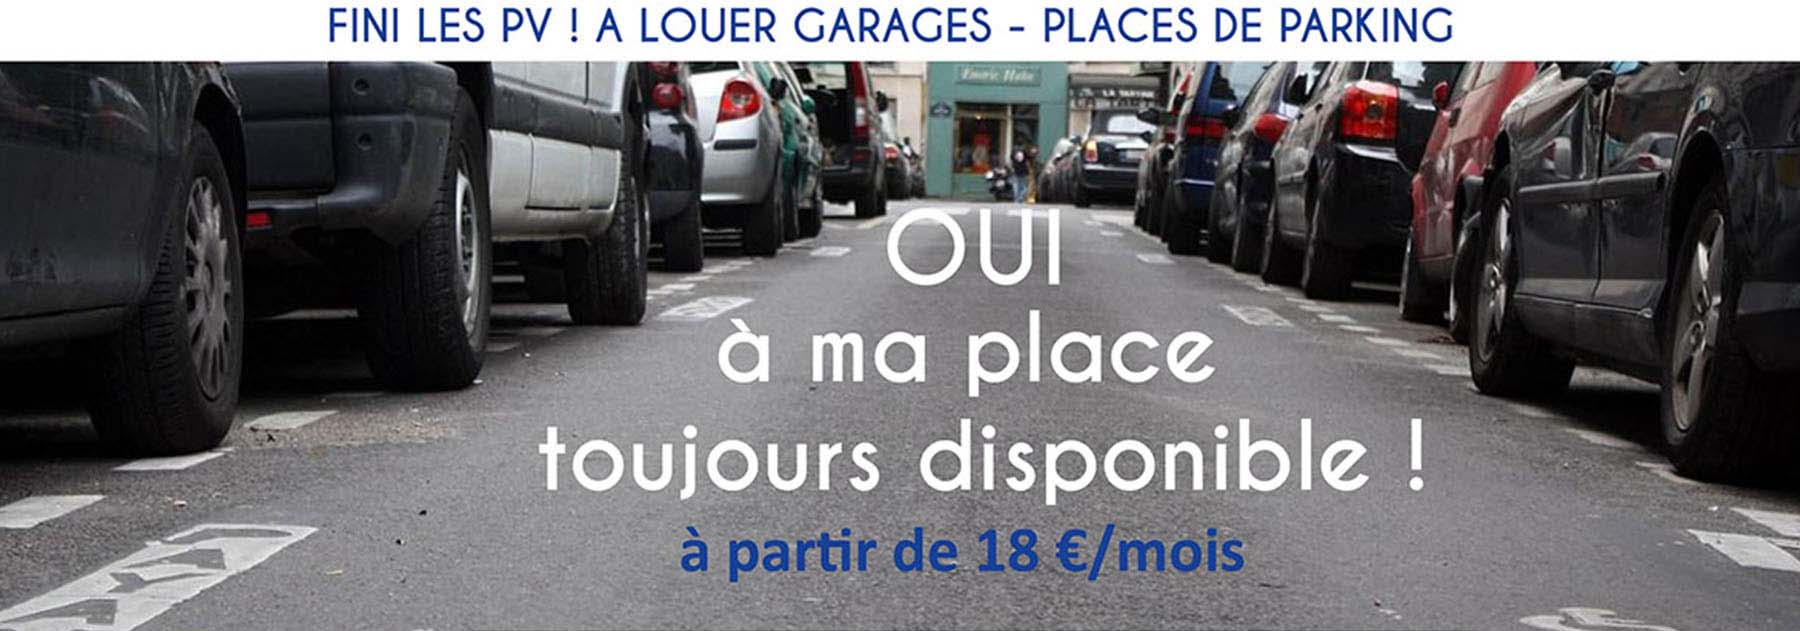 Location garages parking à Roanne et Riorges